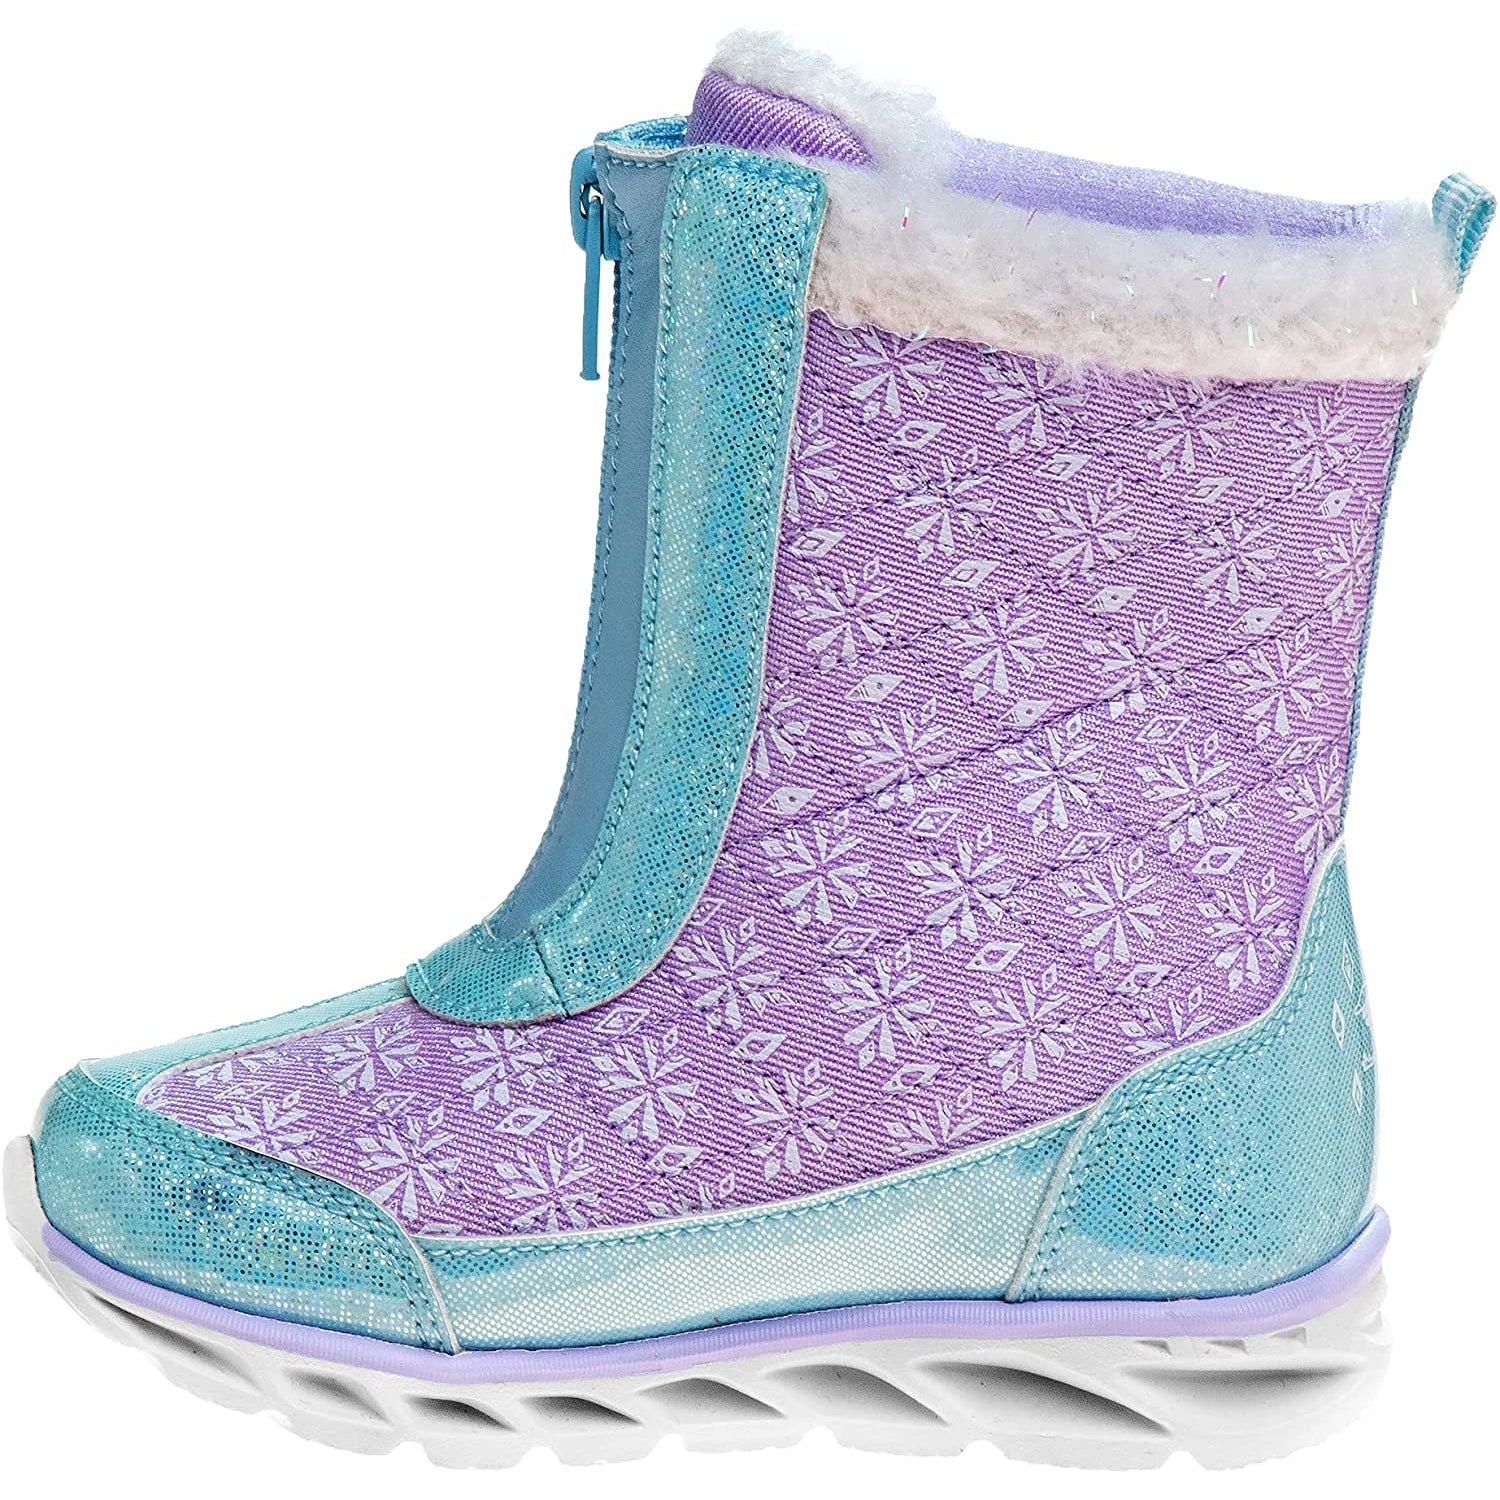 Josmo Disney Frozen Light Up Snow Boot for Girls